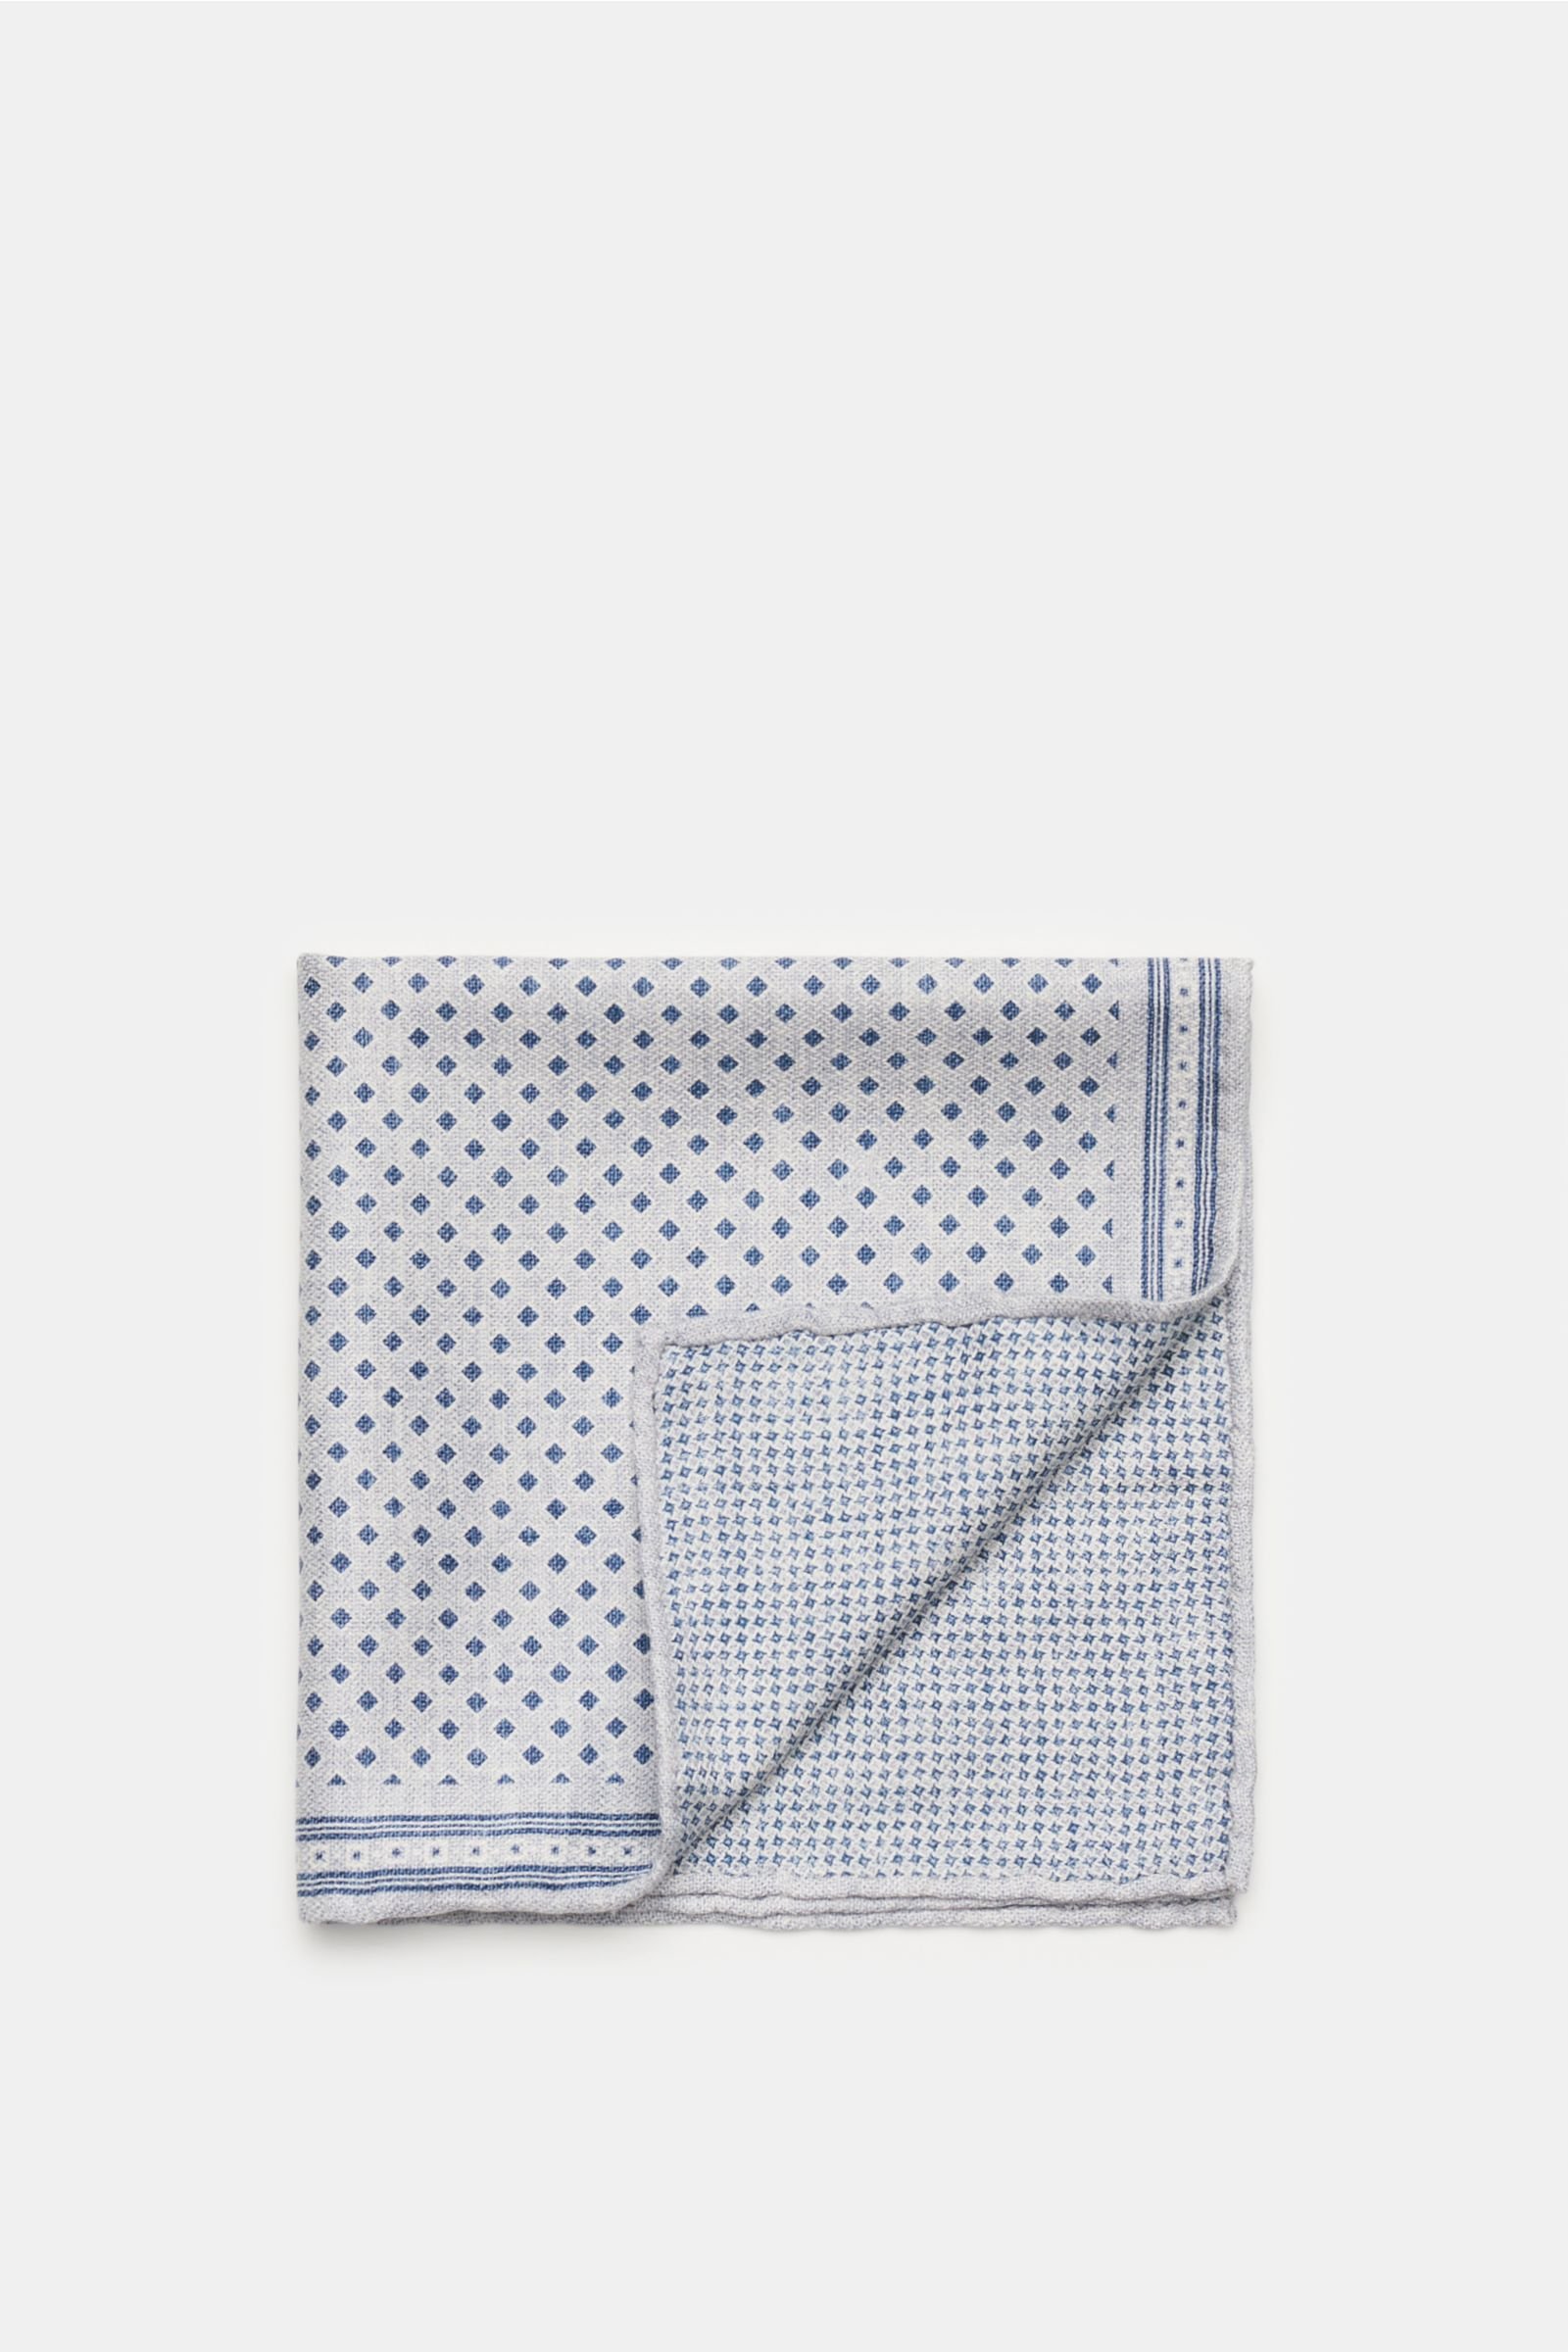 Pocket square light blue/grey-blue patterned